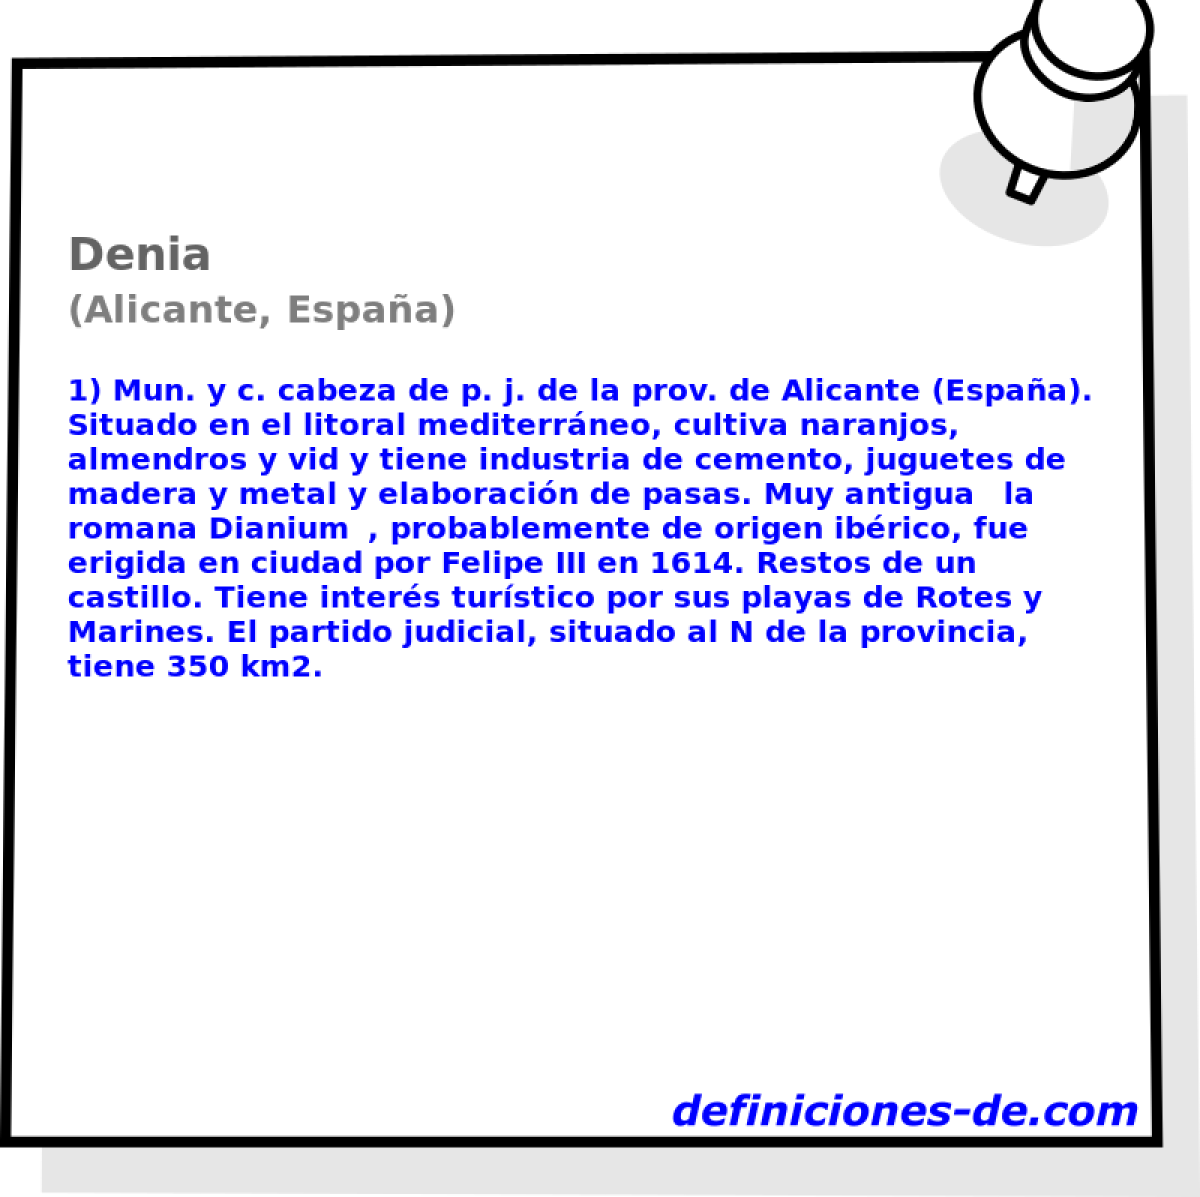 Denia (Alicante, Espaa)